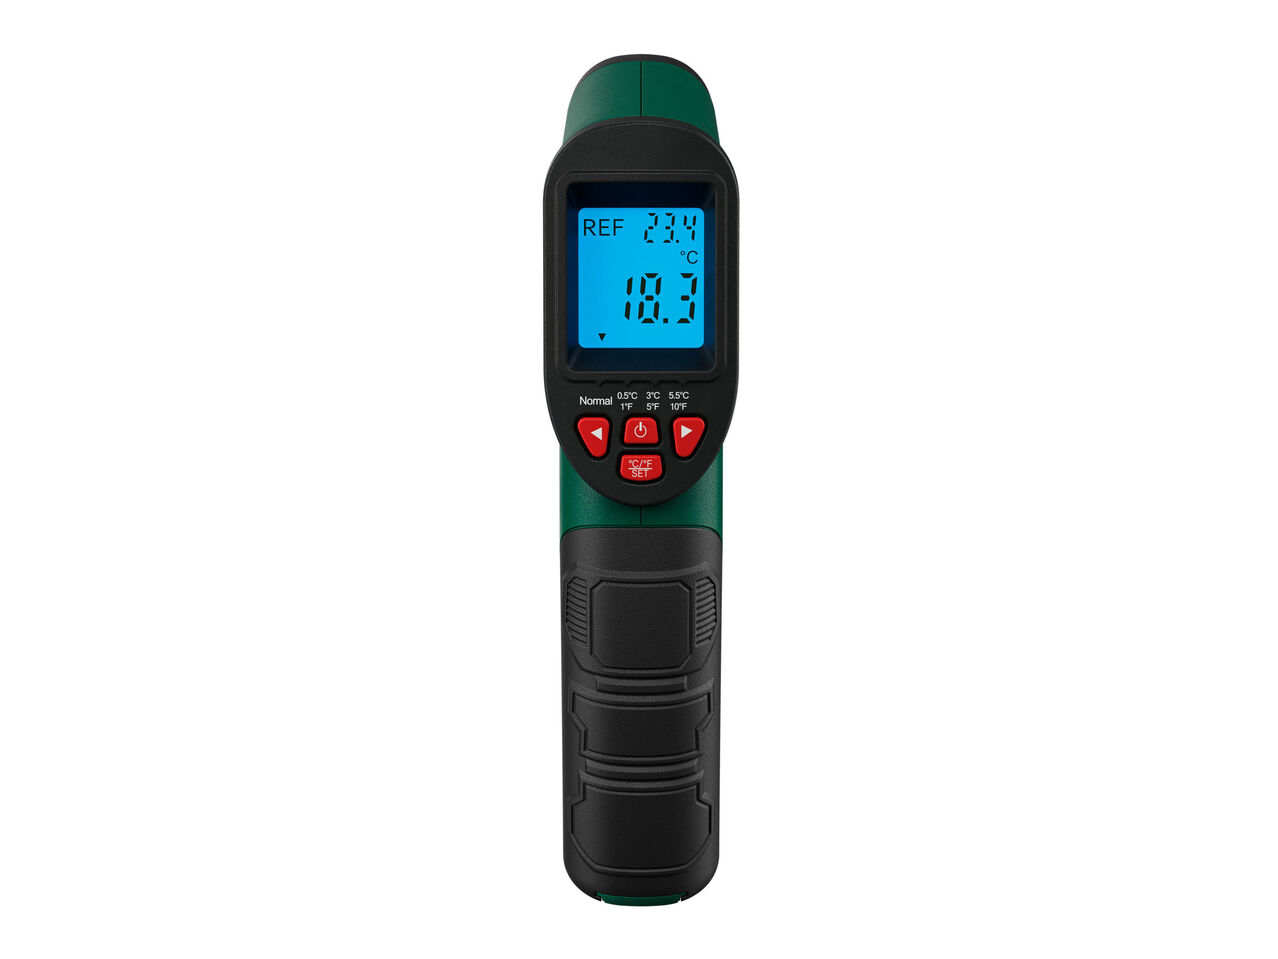 PARKSIDE® Termometr na podczerwień , cena 99 PLN 
Pirometr
- zadbaj o ciepło
- ...